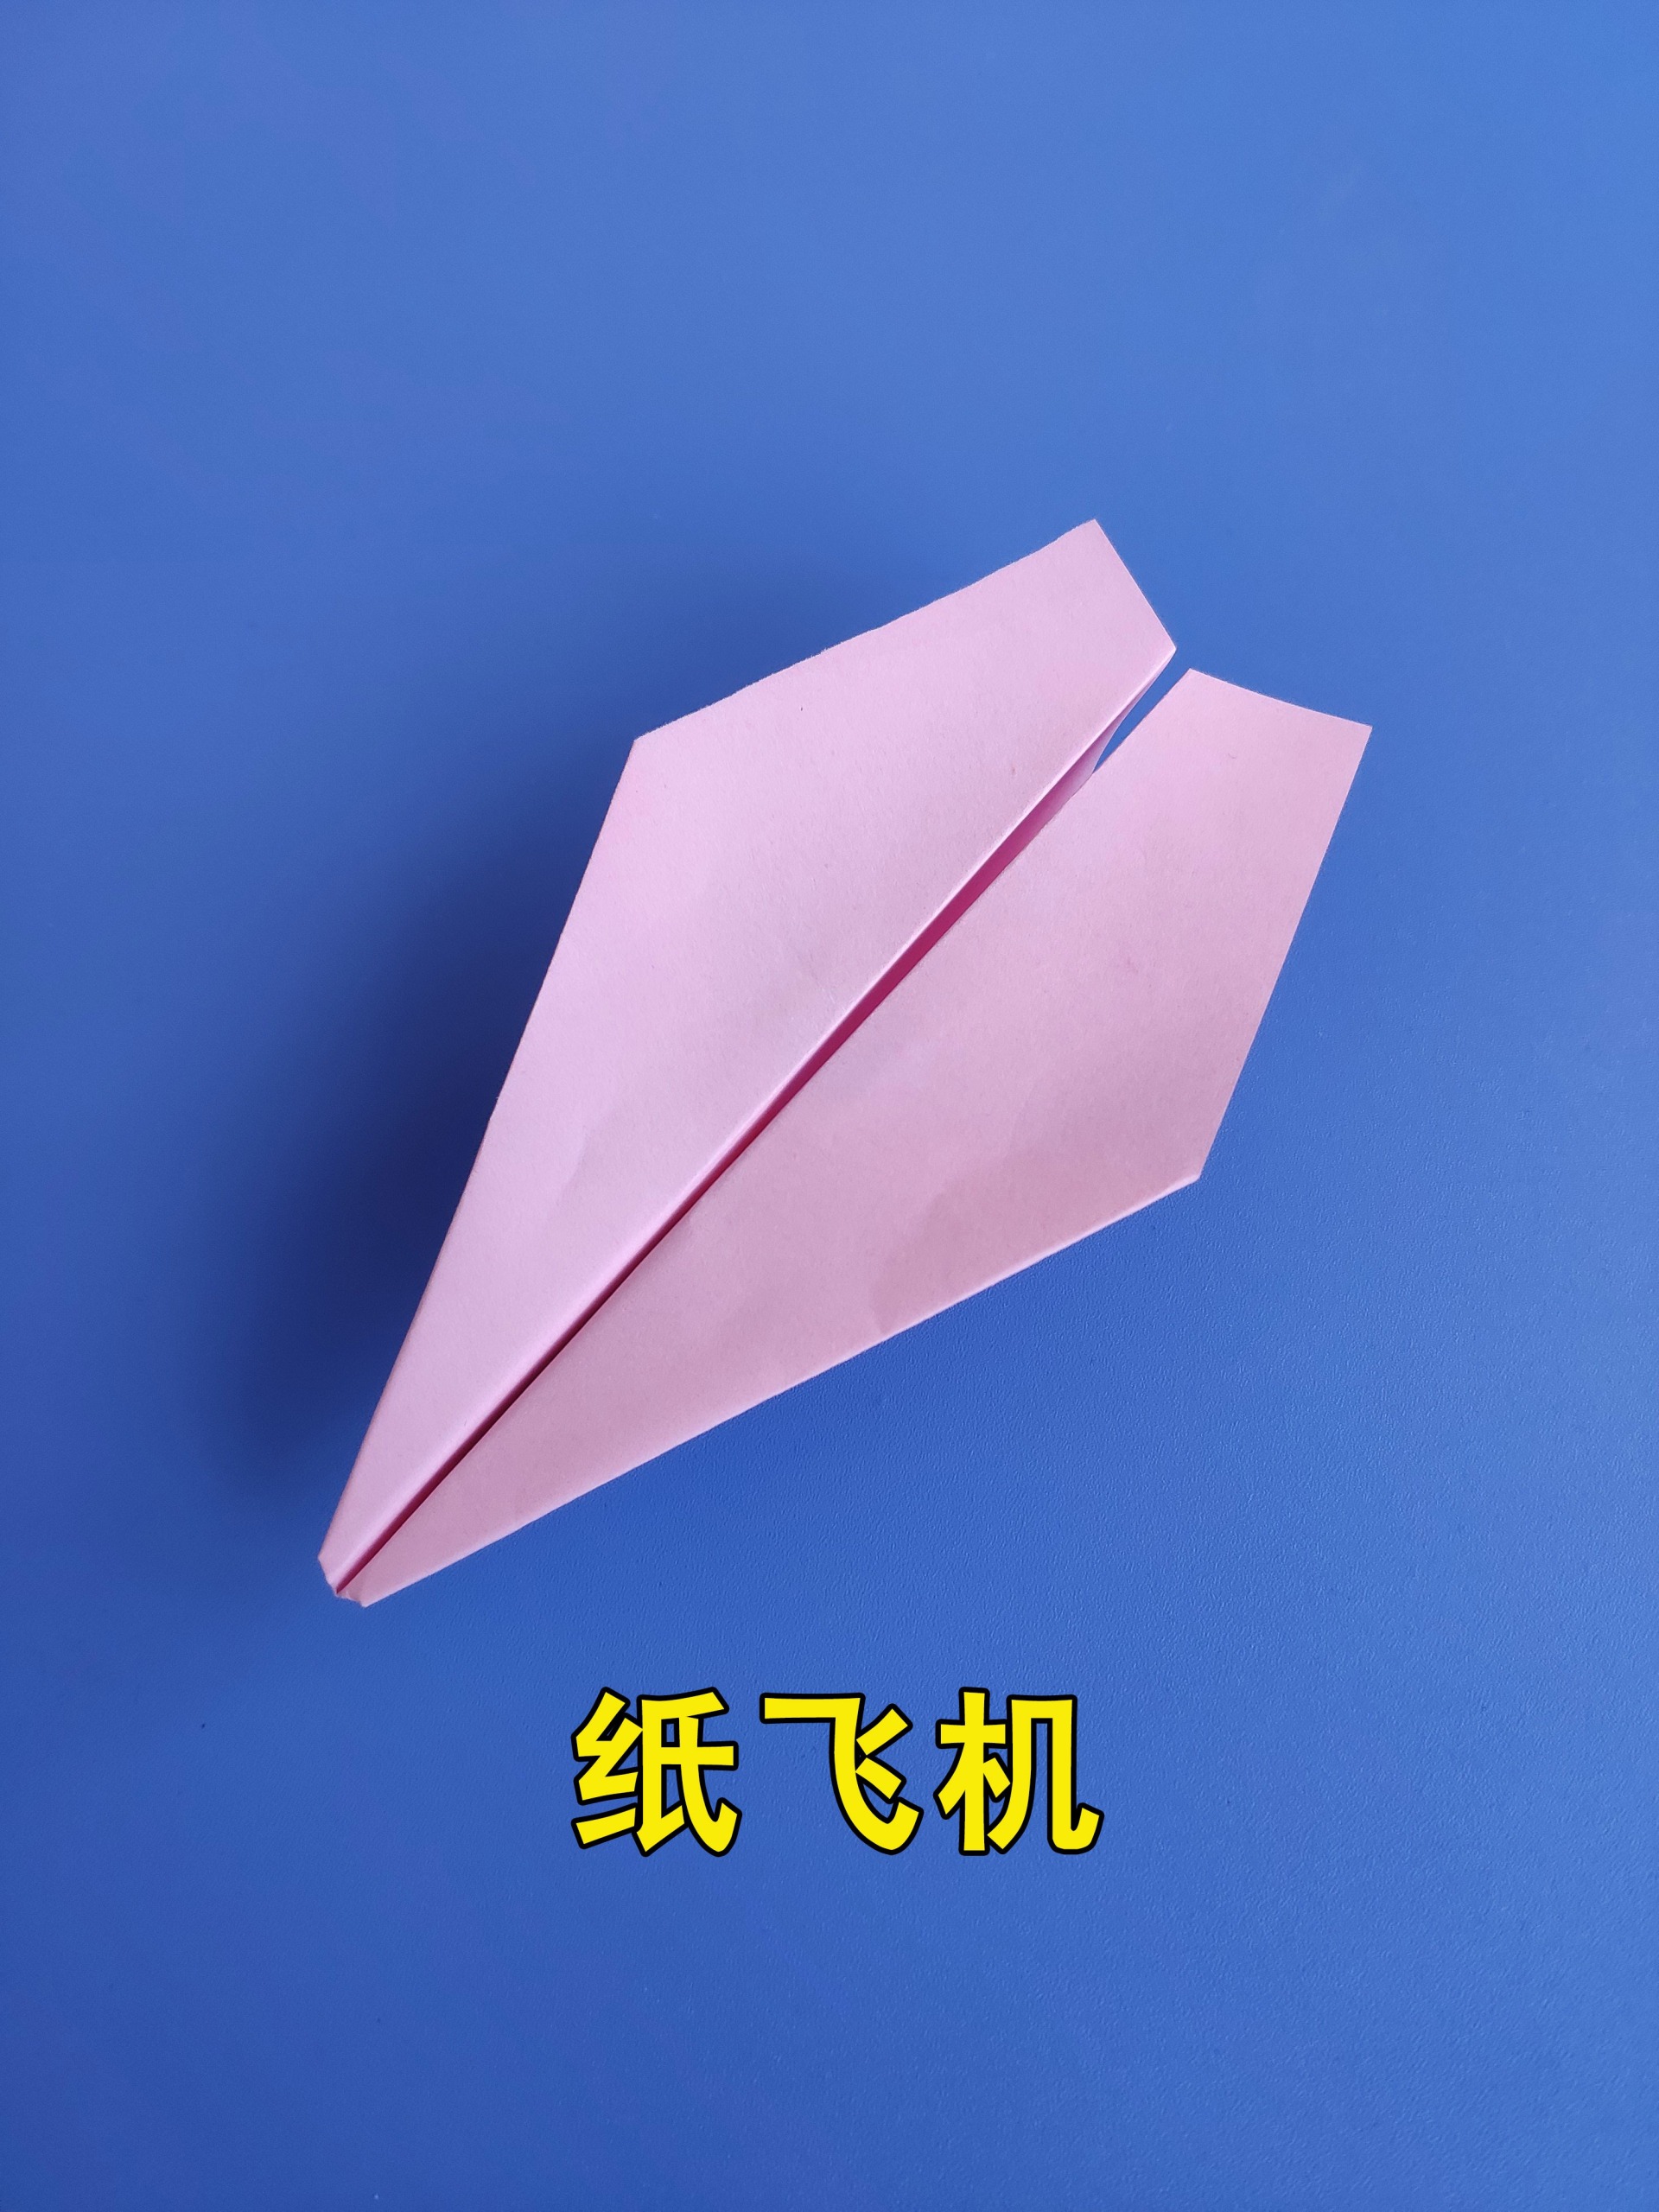 折纸飞机教程,简单好玩,飞得又高又远